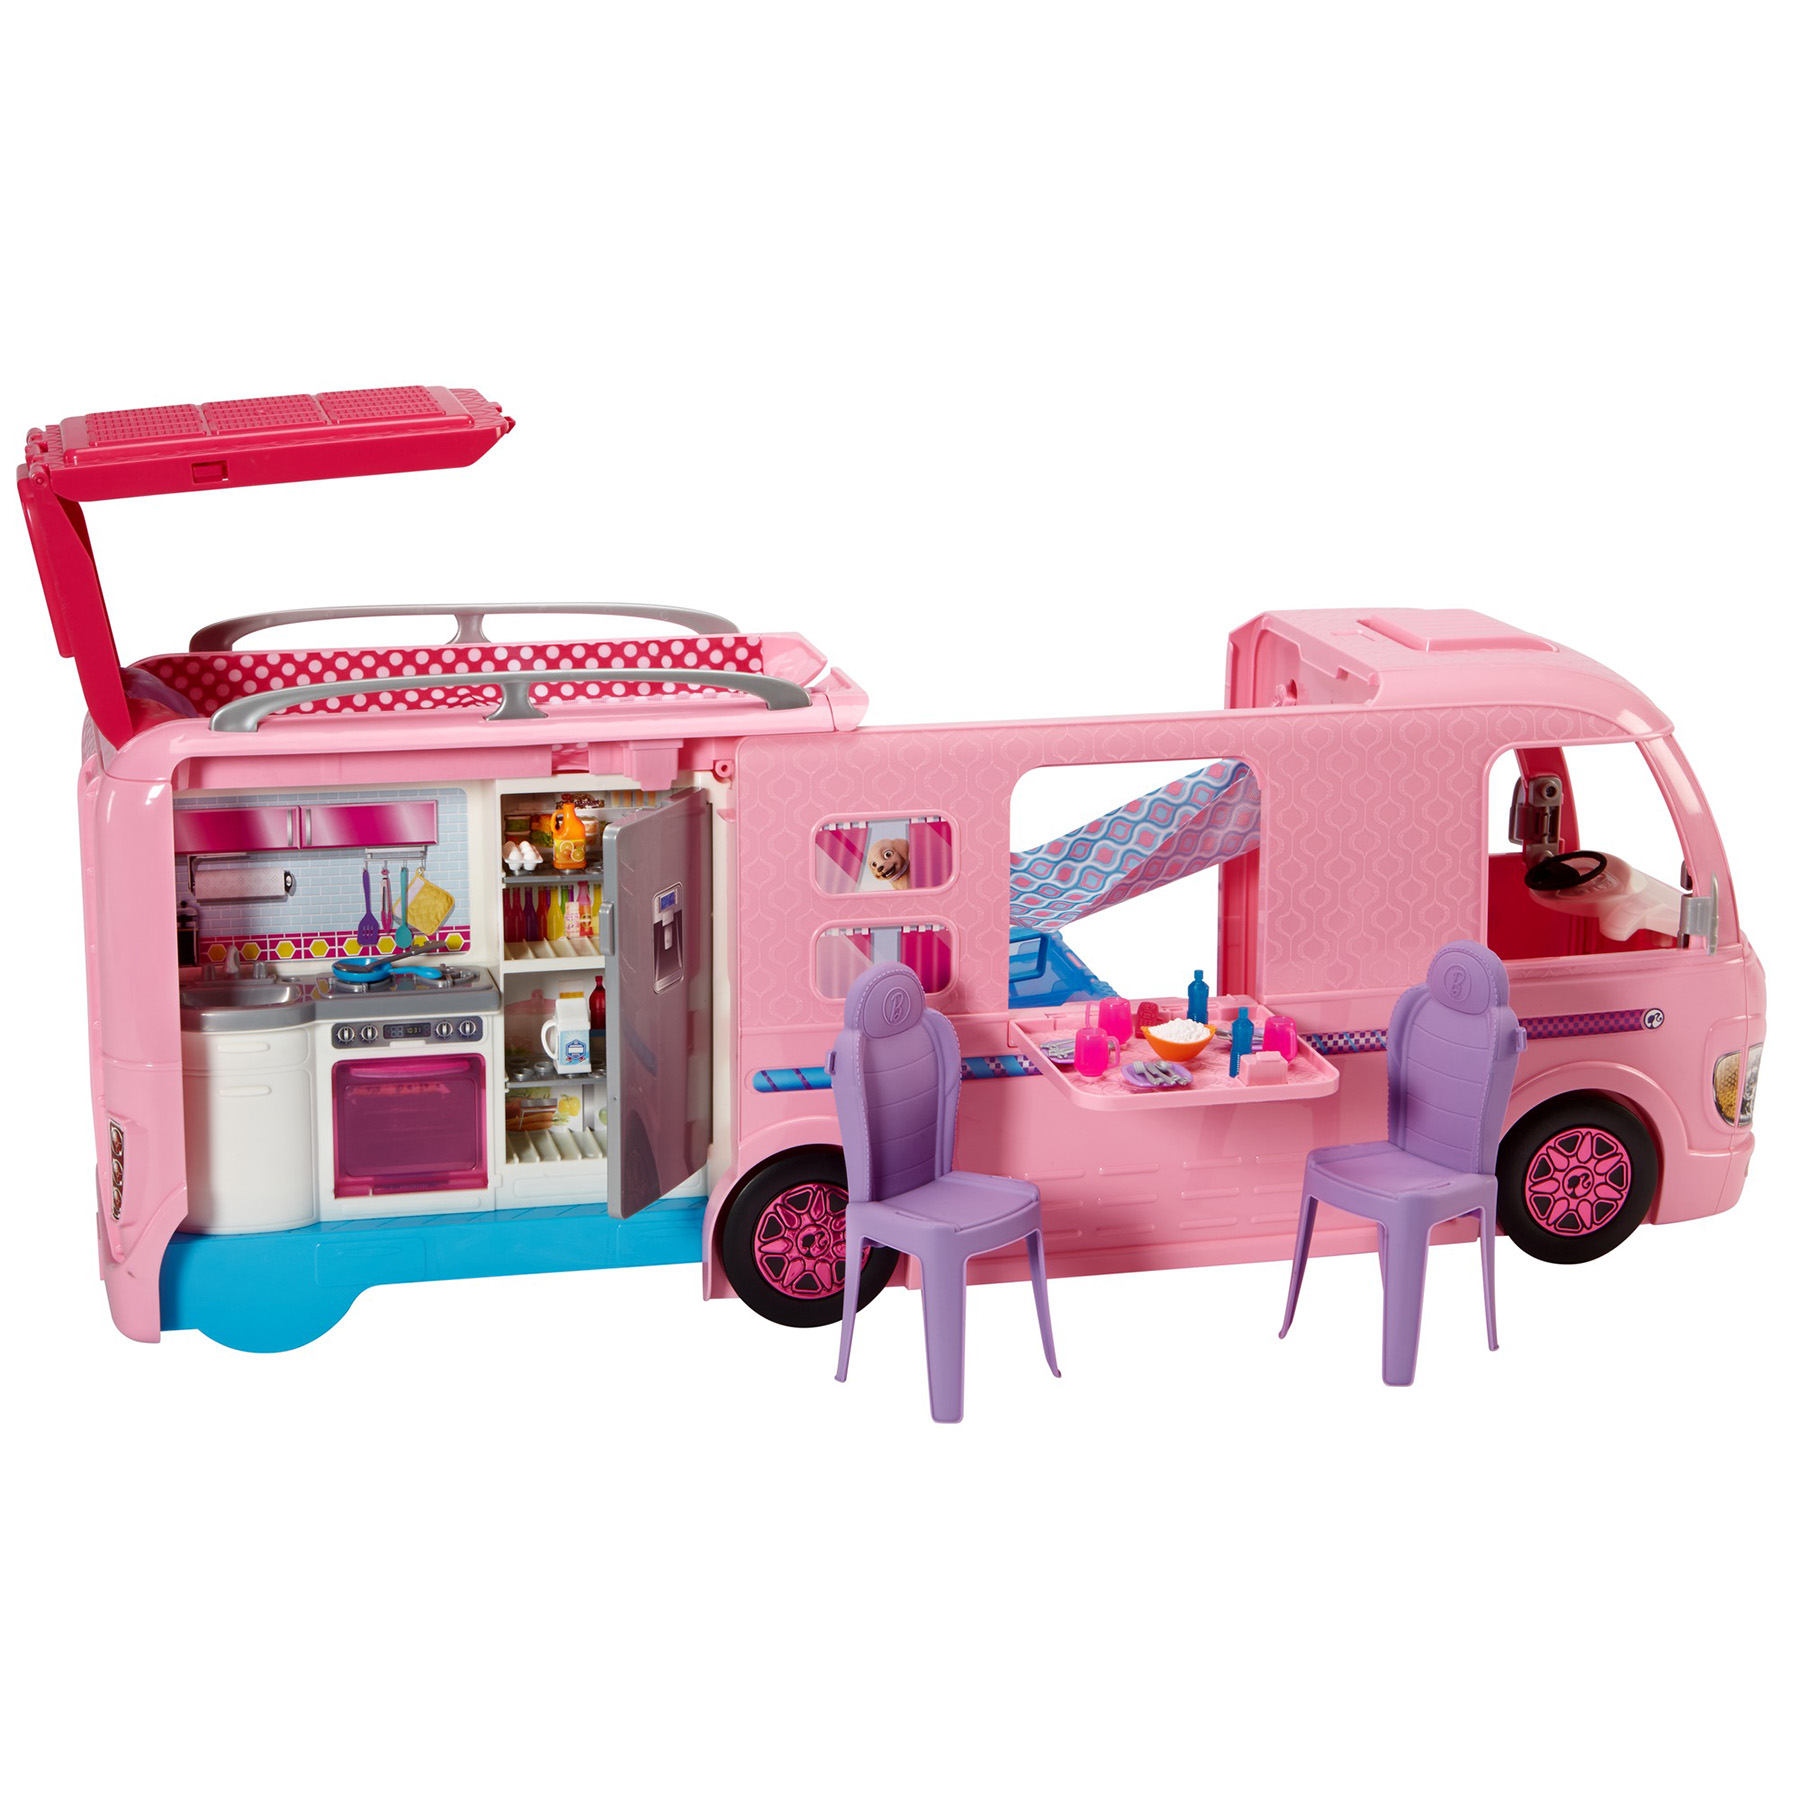 barbie caravan set